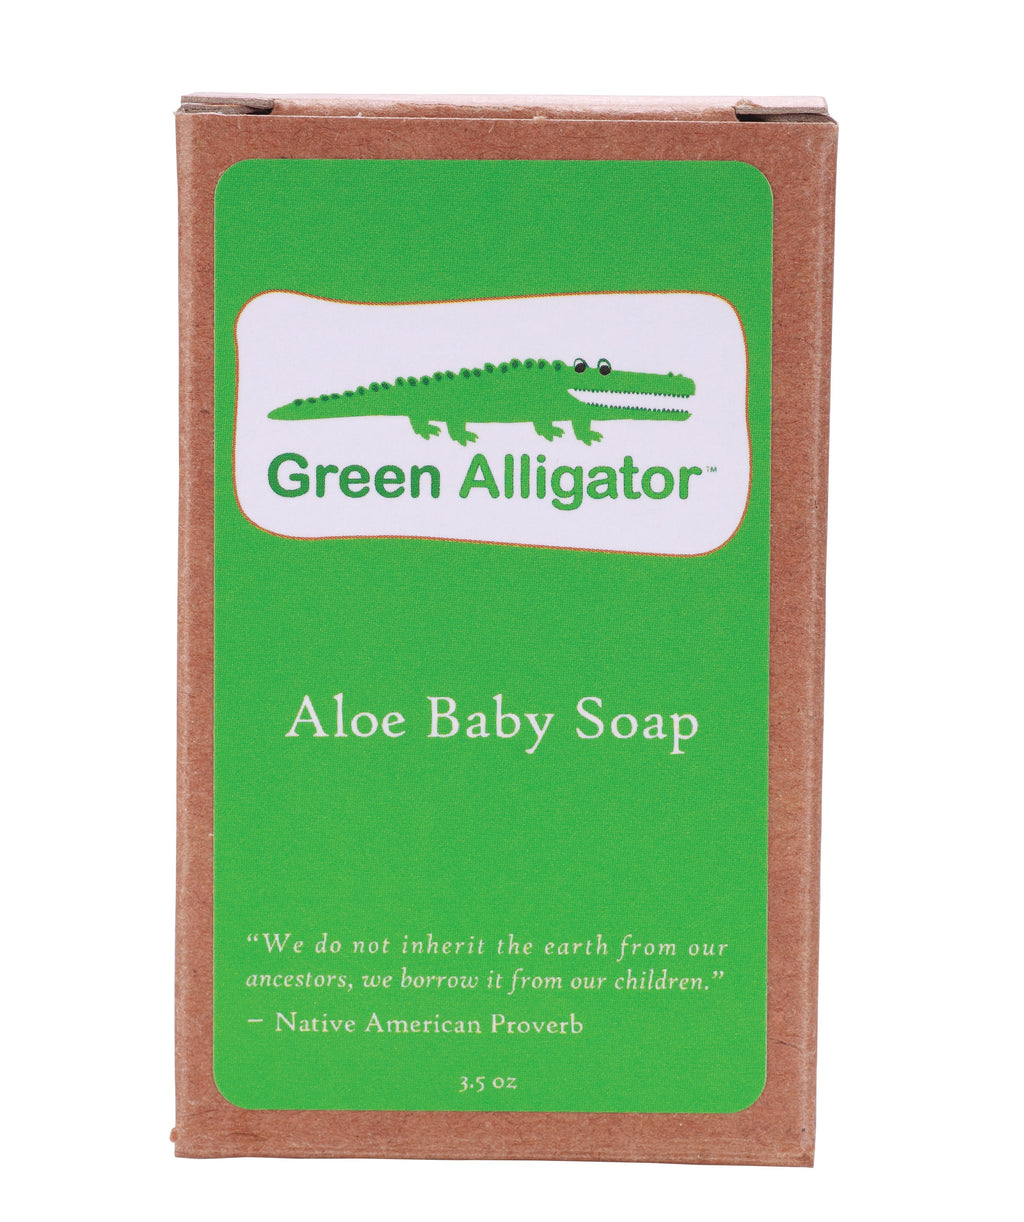 Green Alligator Aloe Baby Soap- Celadon Road- www.celadonroad.com